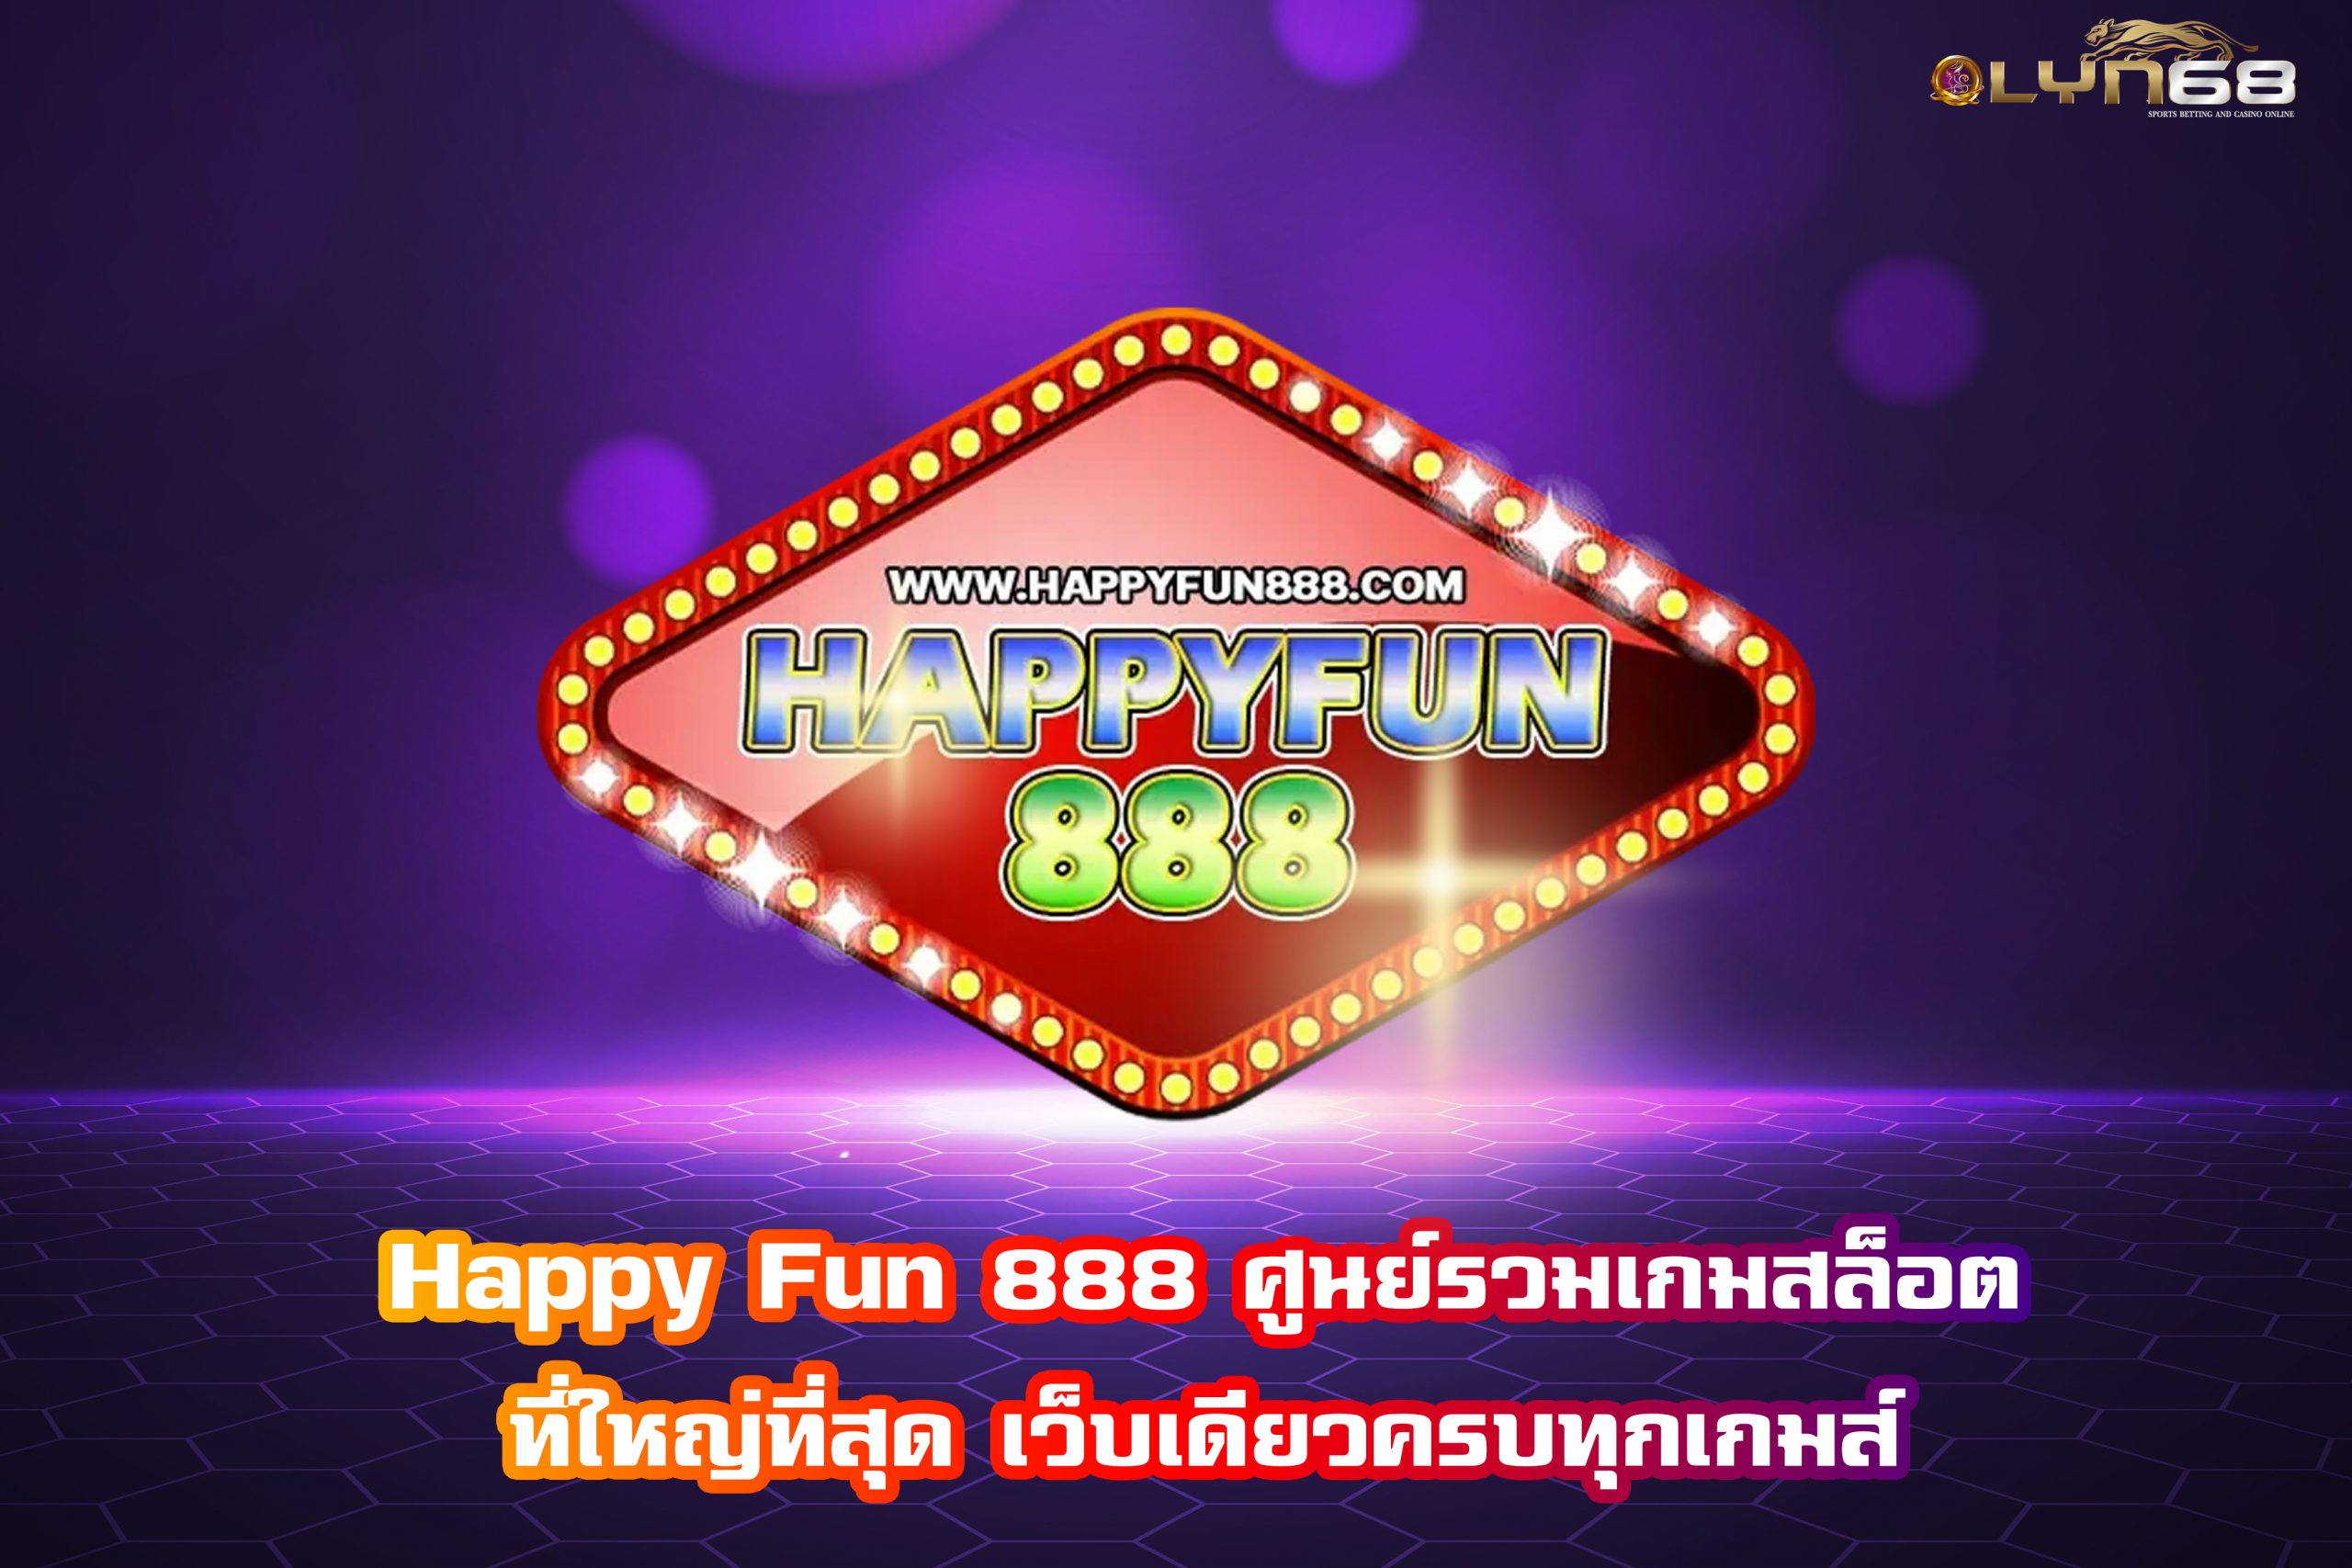 Happy Fun 888 ศูนย์รวมเกมสล็อตที่ใหญ่ที่สุด เว็บเดียวครบทุกเกมส์